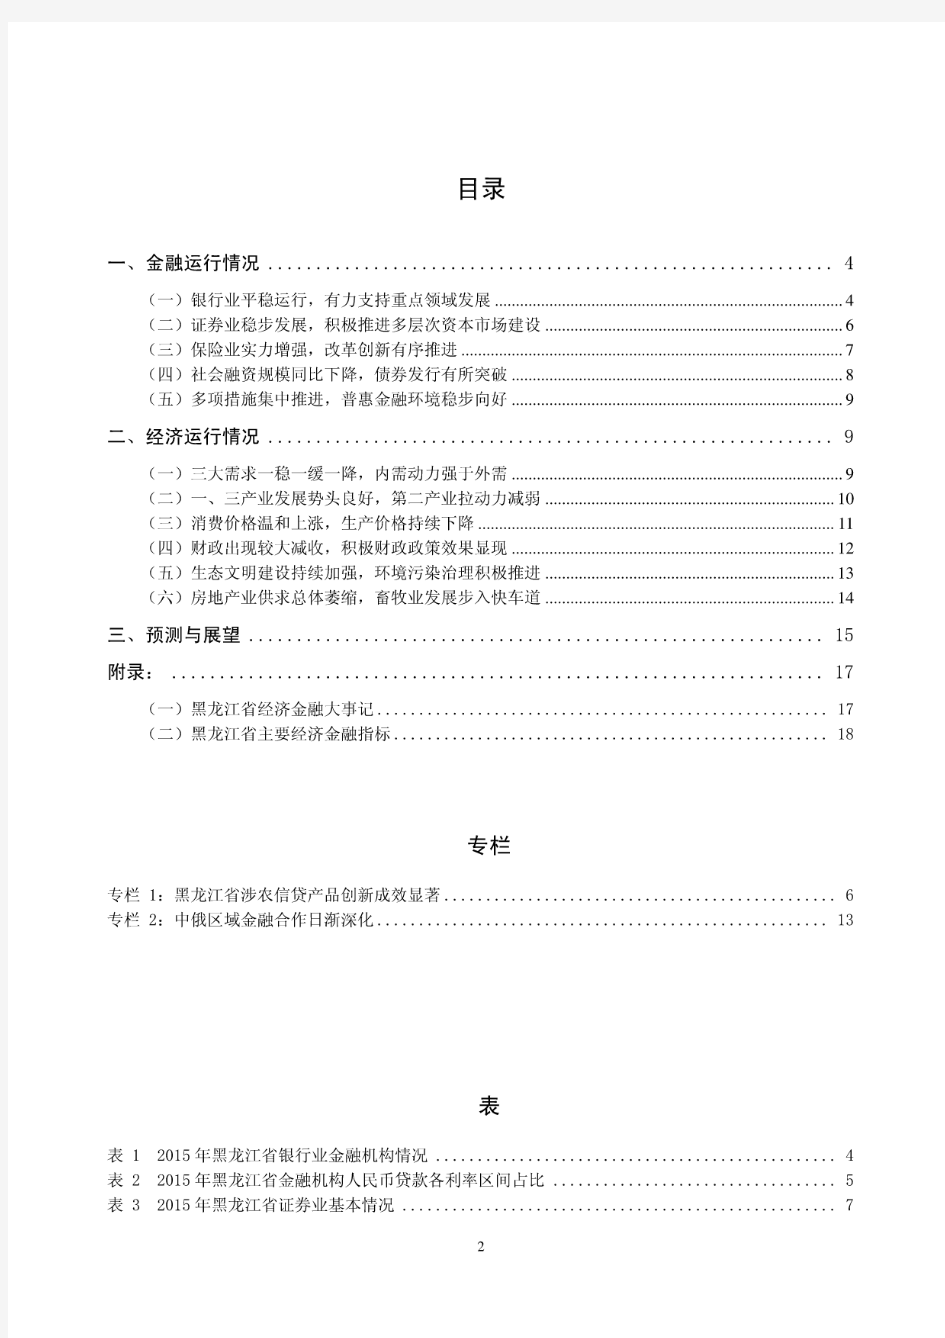 2015年黑龙江省金融运行报告